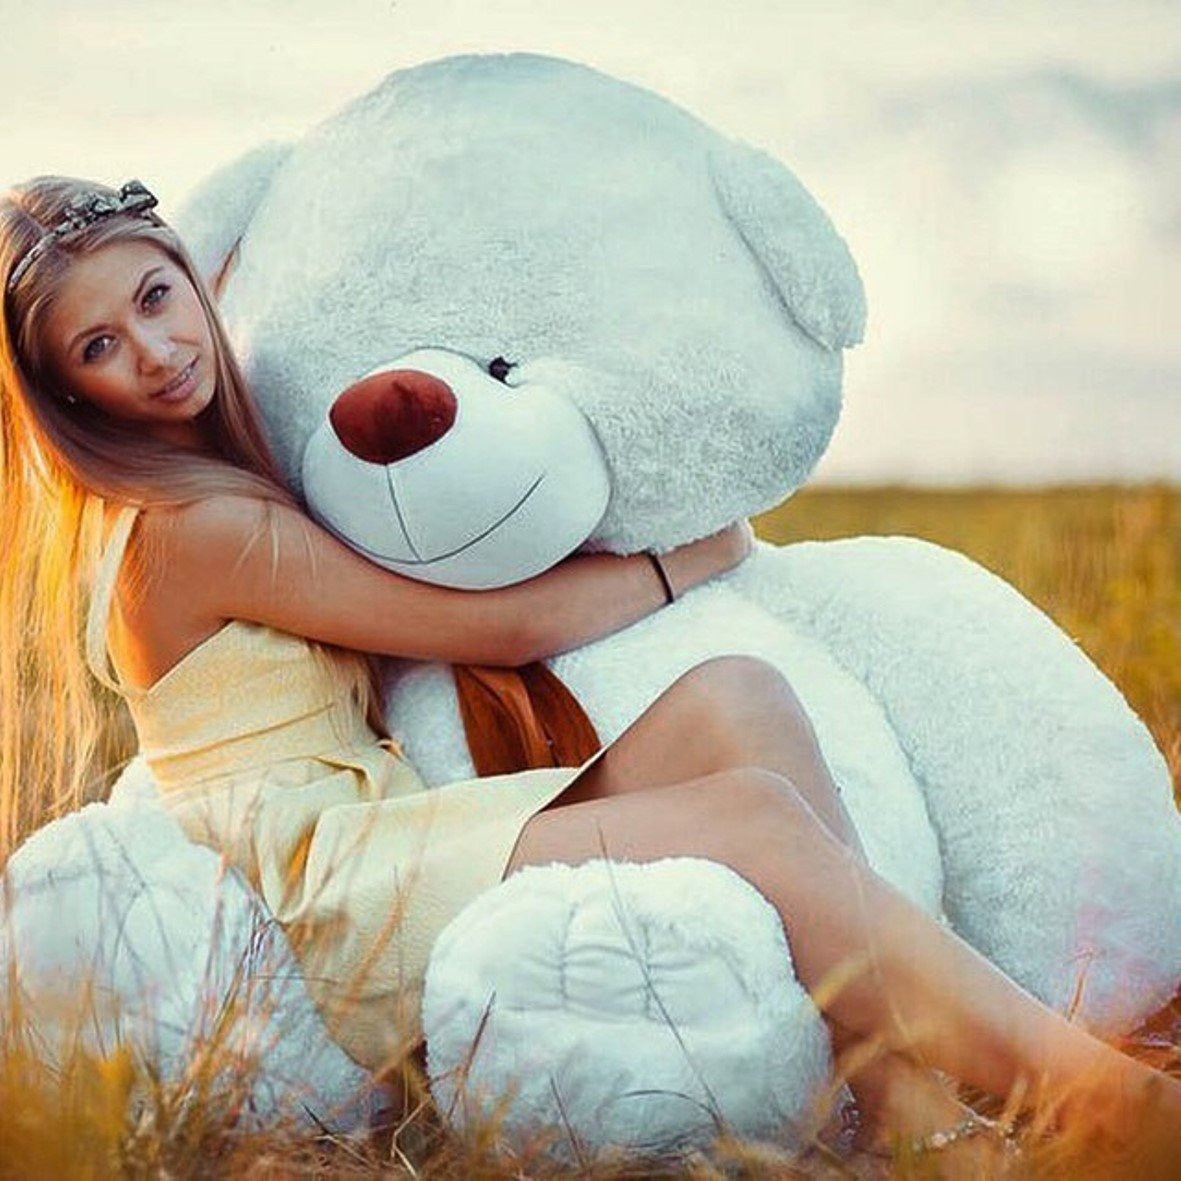 Фото девушки с плюшевым медведем фото